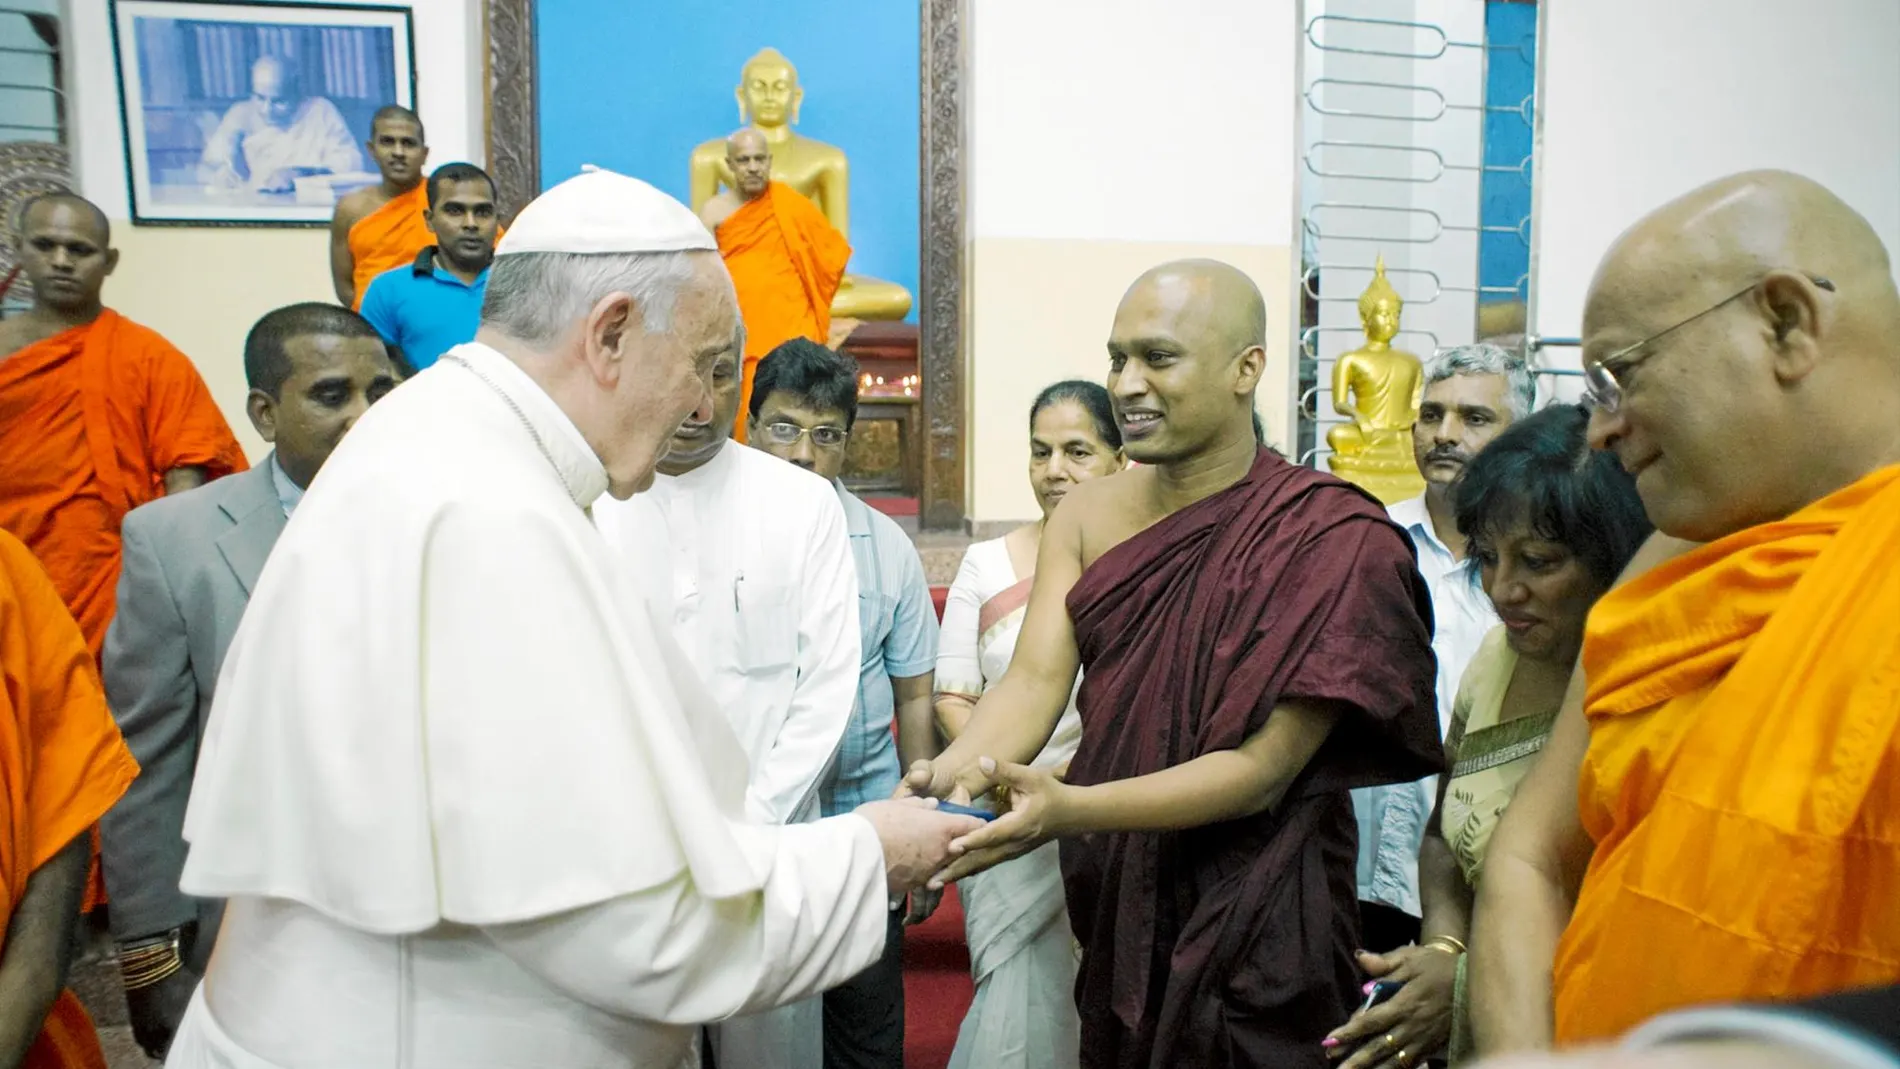 El Papa Francisco, en el encuentro que mantuvo con varios monjes budistas en Sri Lanka en enero de 2015